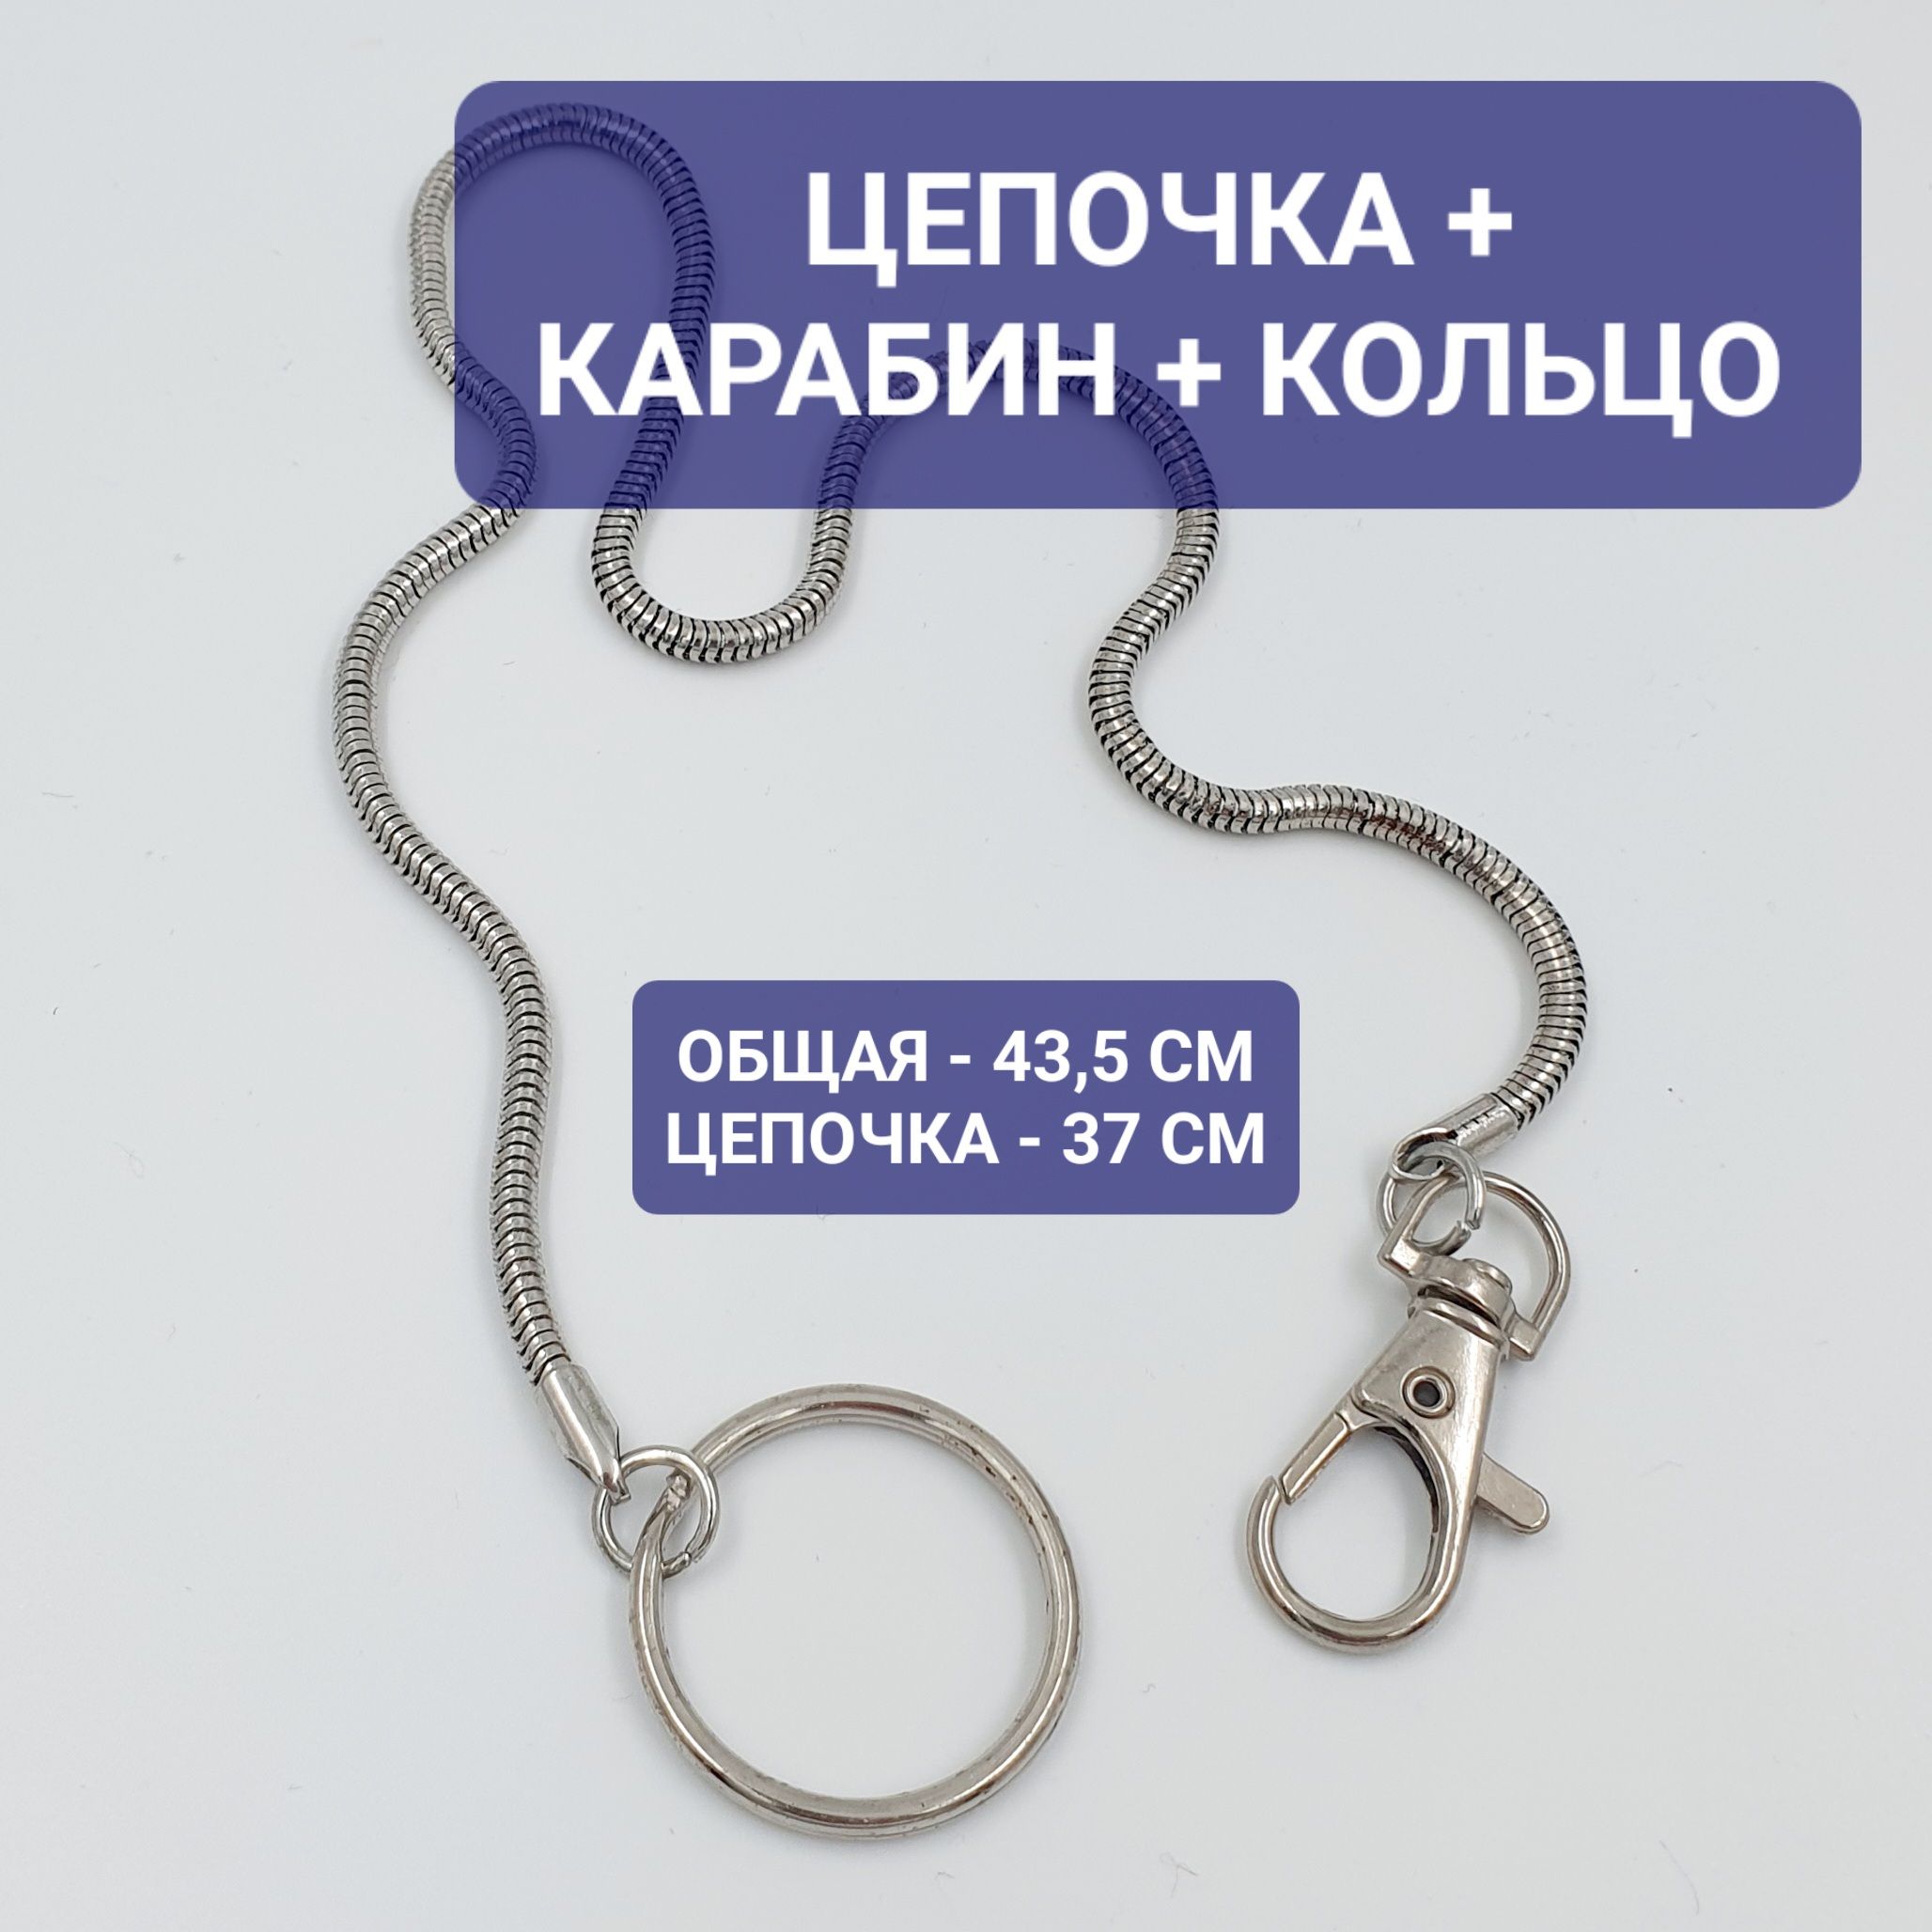 Цепочка с карабином и кольцом для ключей, удостоверения, пропуска в видезмеи 43,5 см - купить с доставкой по выгодным ценам в интернет-магазинеOZON (818726995)